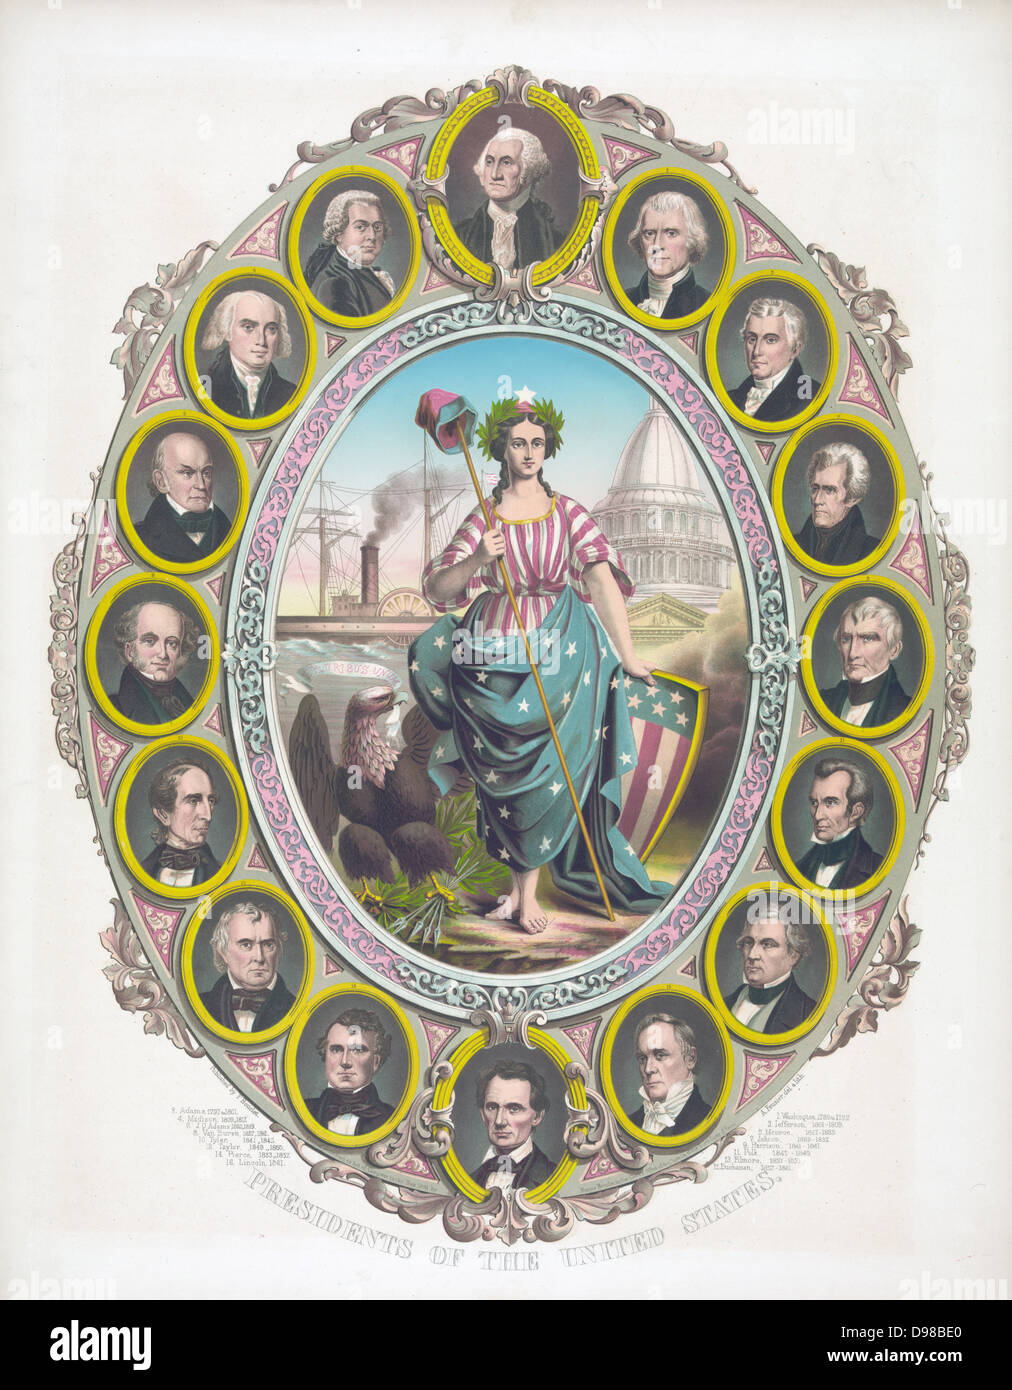 Columbia gekleidet in Stars and Stripes, halten eine Kappe von Freiheit und durch ein Weißkopfseeadler, durch Porträts der ersten 16 Präsidenten der USA, Washington am oberen umgeben, ein Bartloser Lincoln am unteren begleitet. Farbige Lithographie, c 1861. Stockfoto